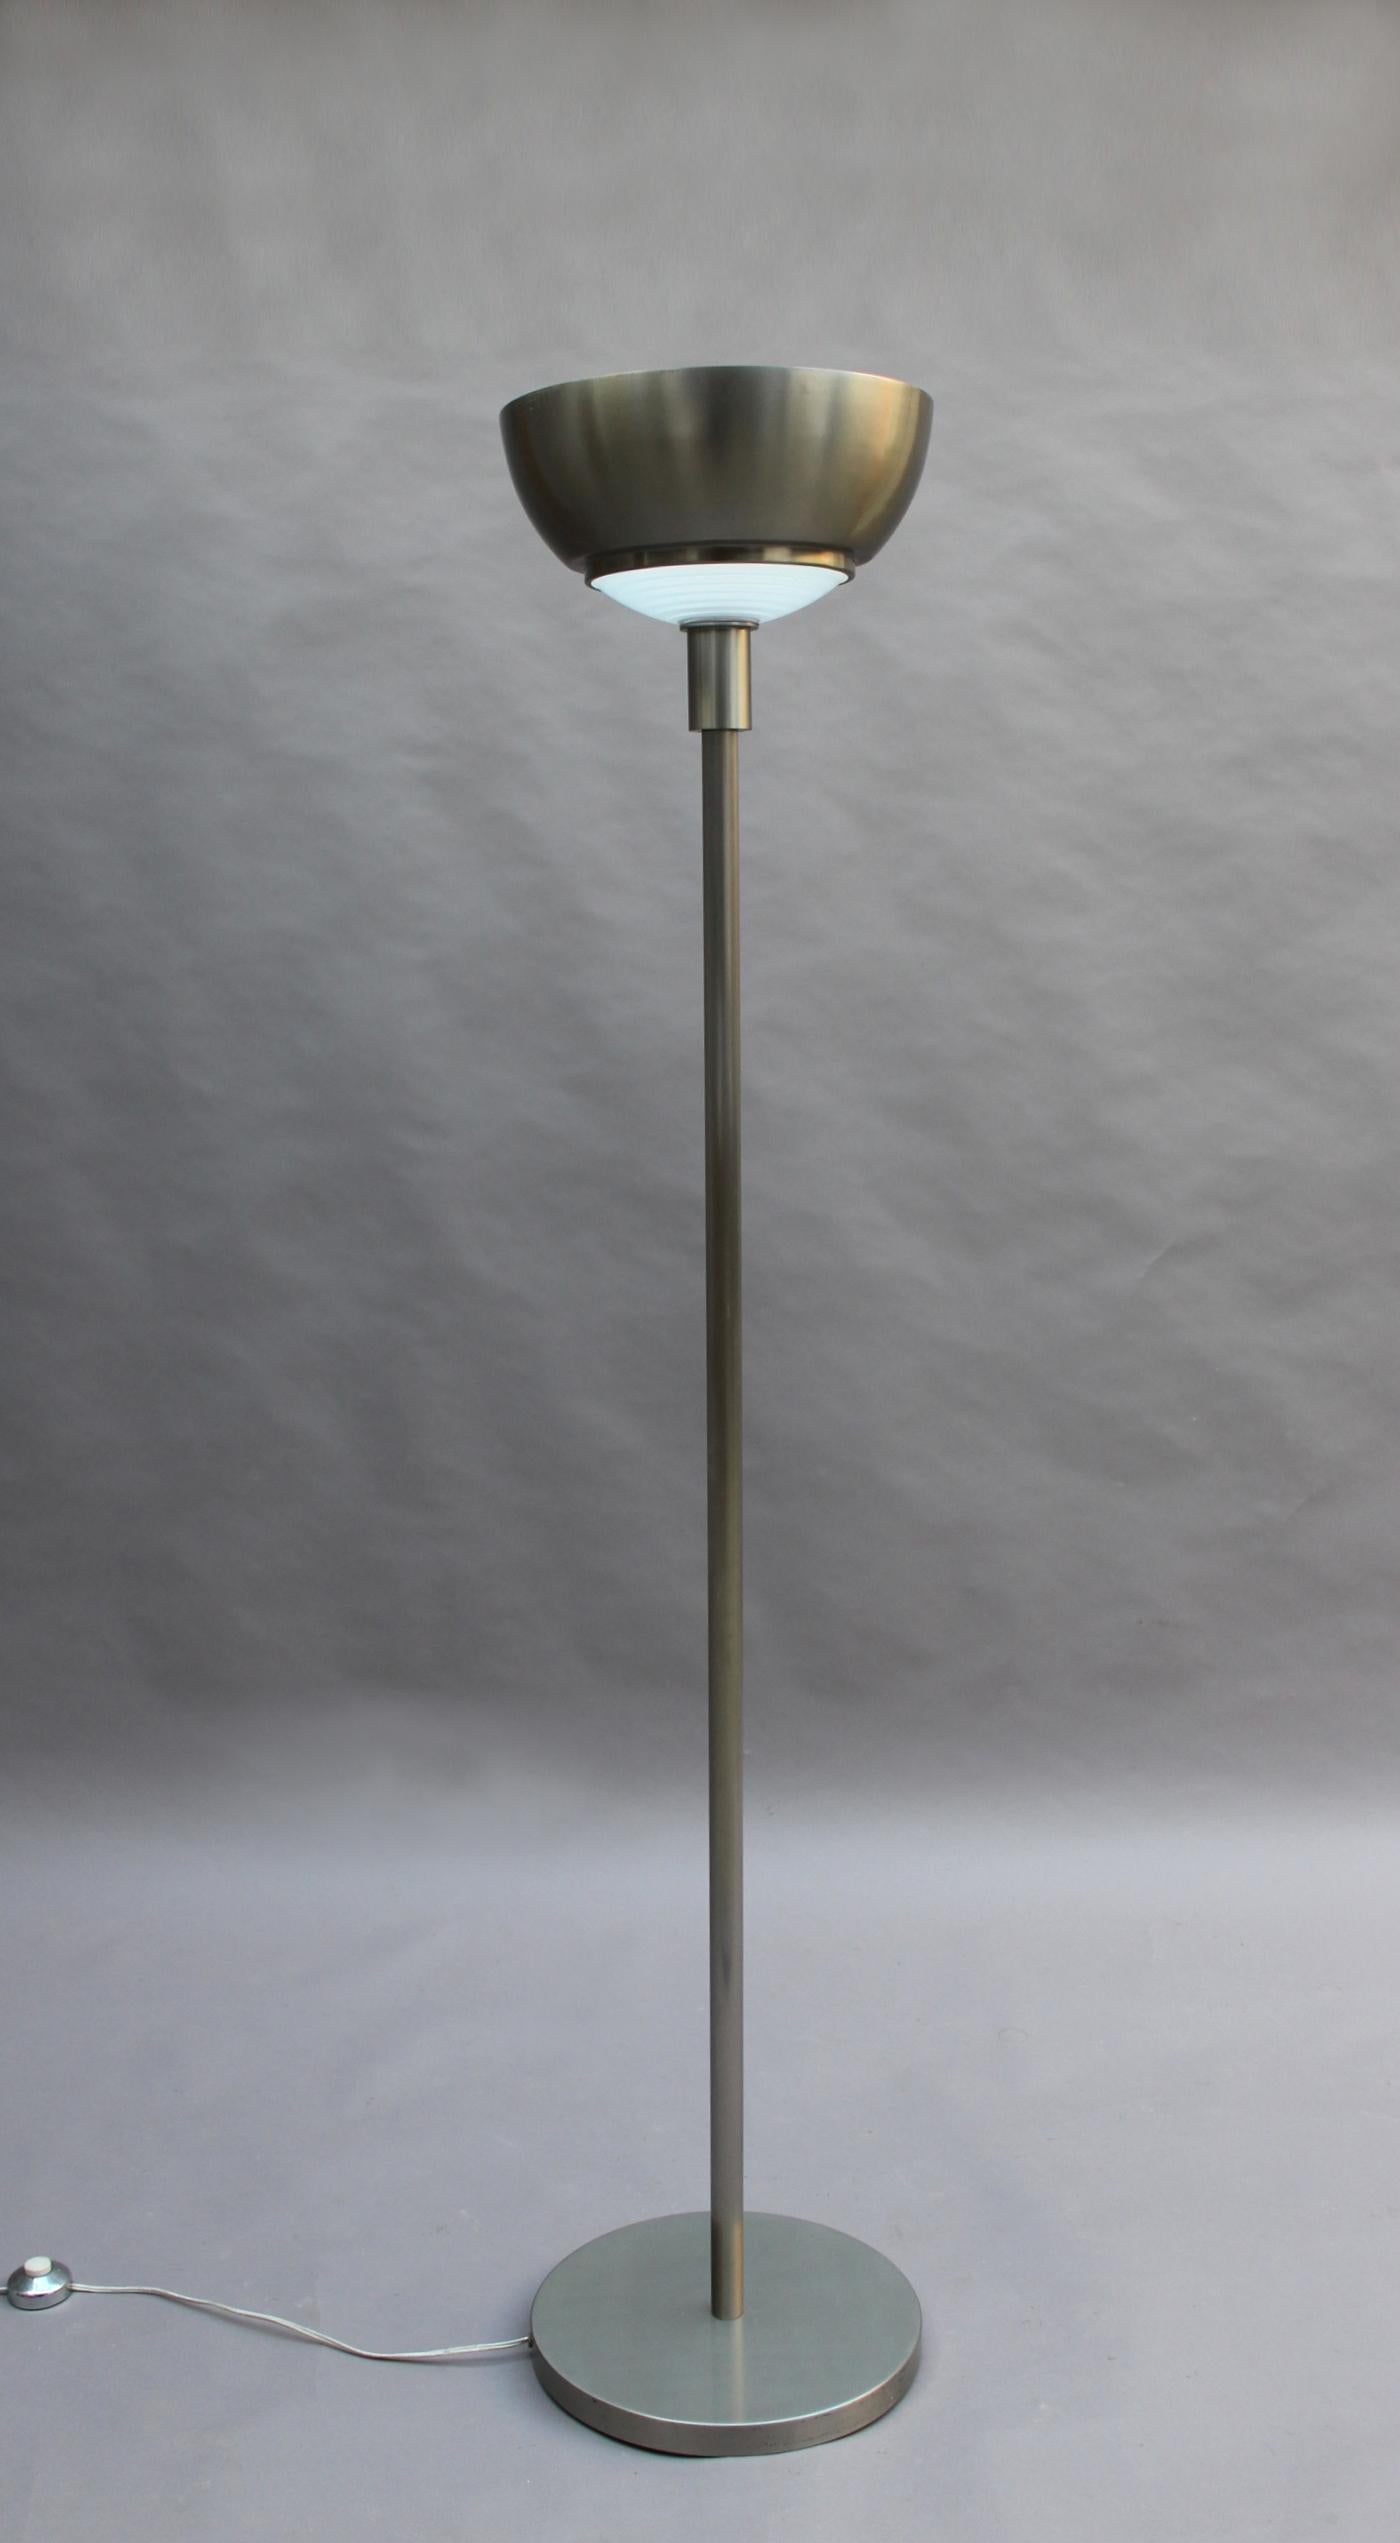 Lampadaire en nickel brossé de Jean Perzel, de style Art déco français, avec une lentille en verre de Fresnel.